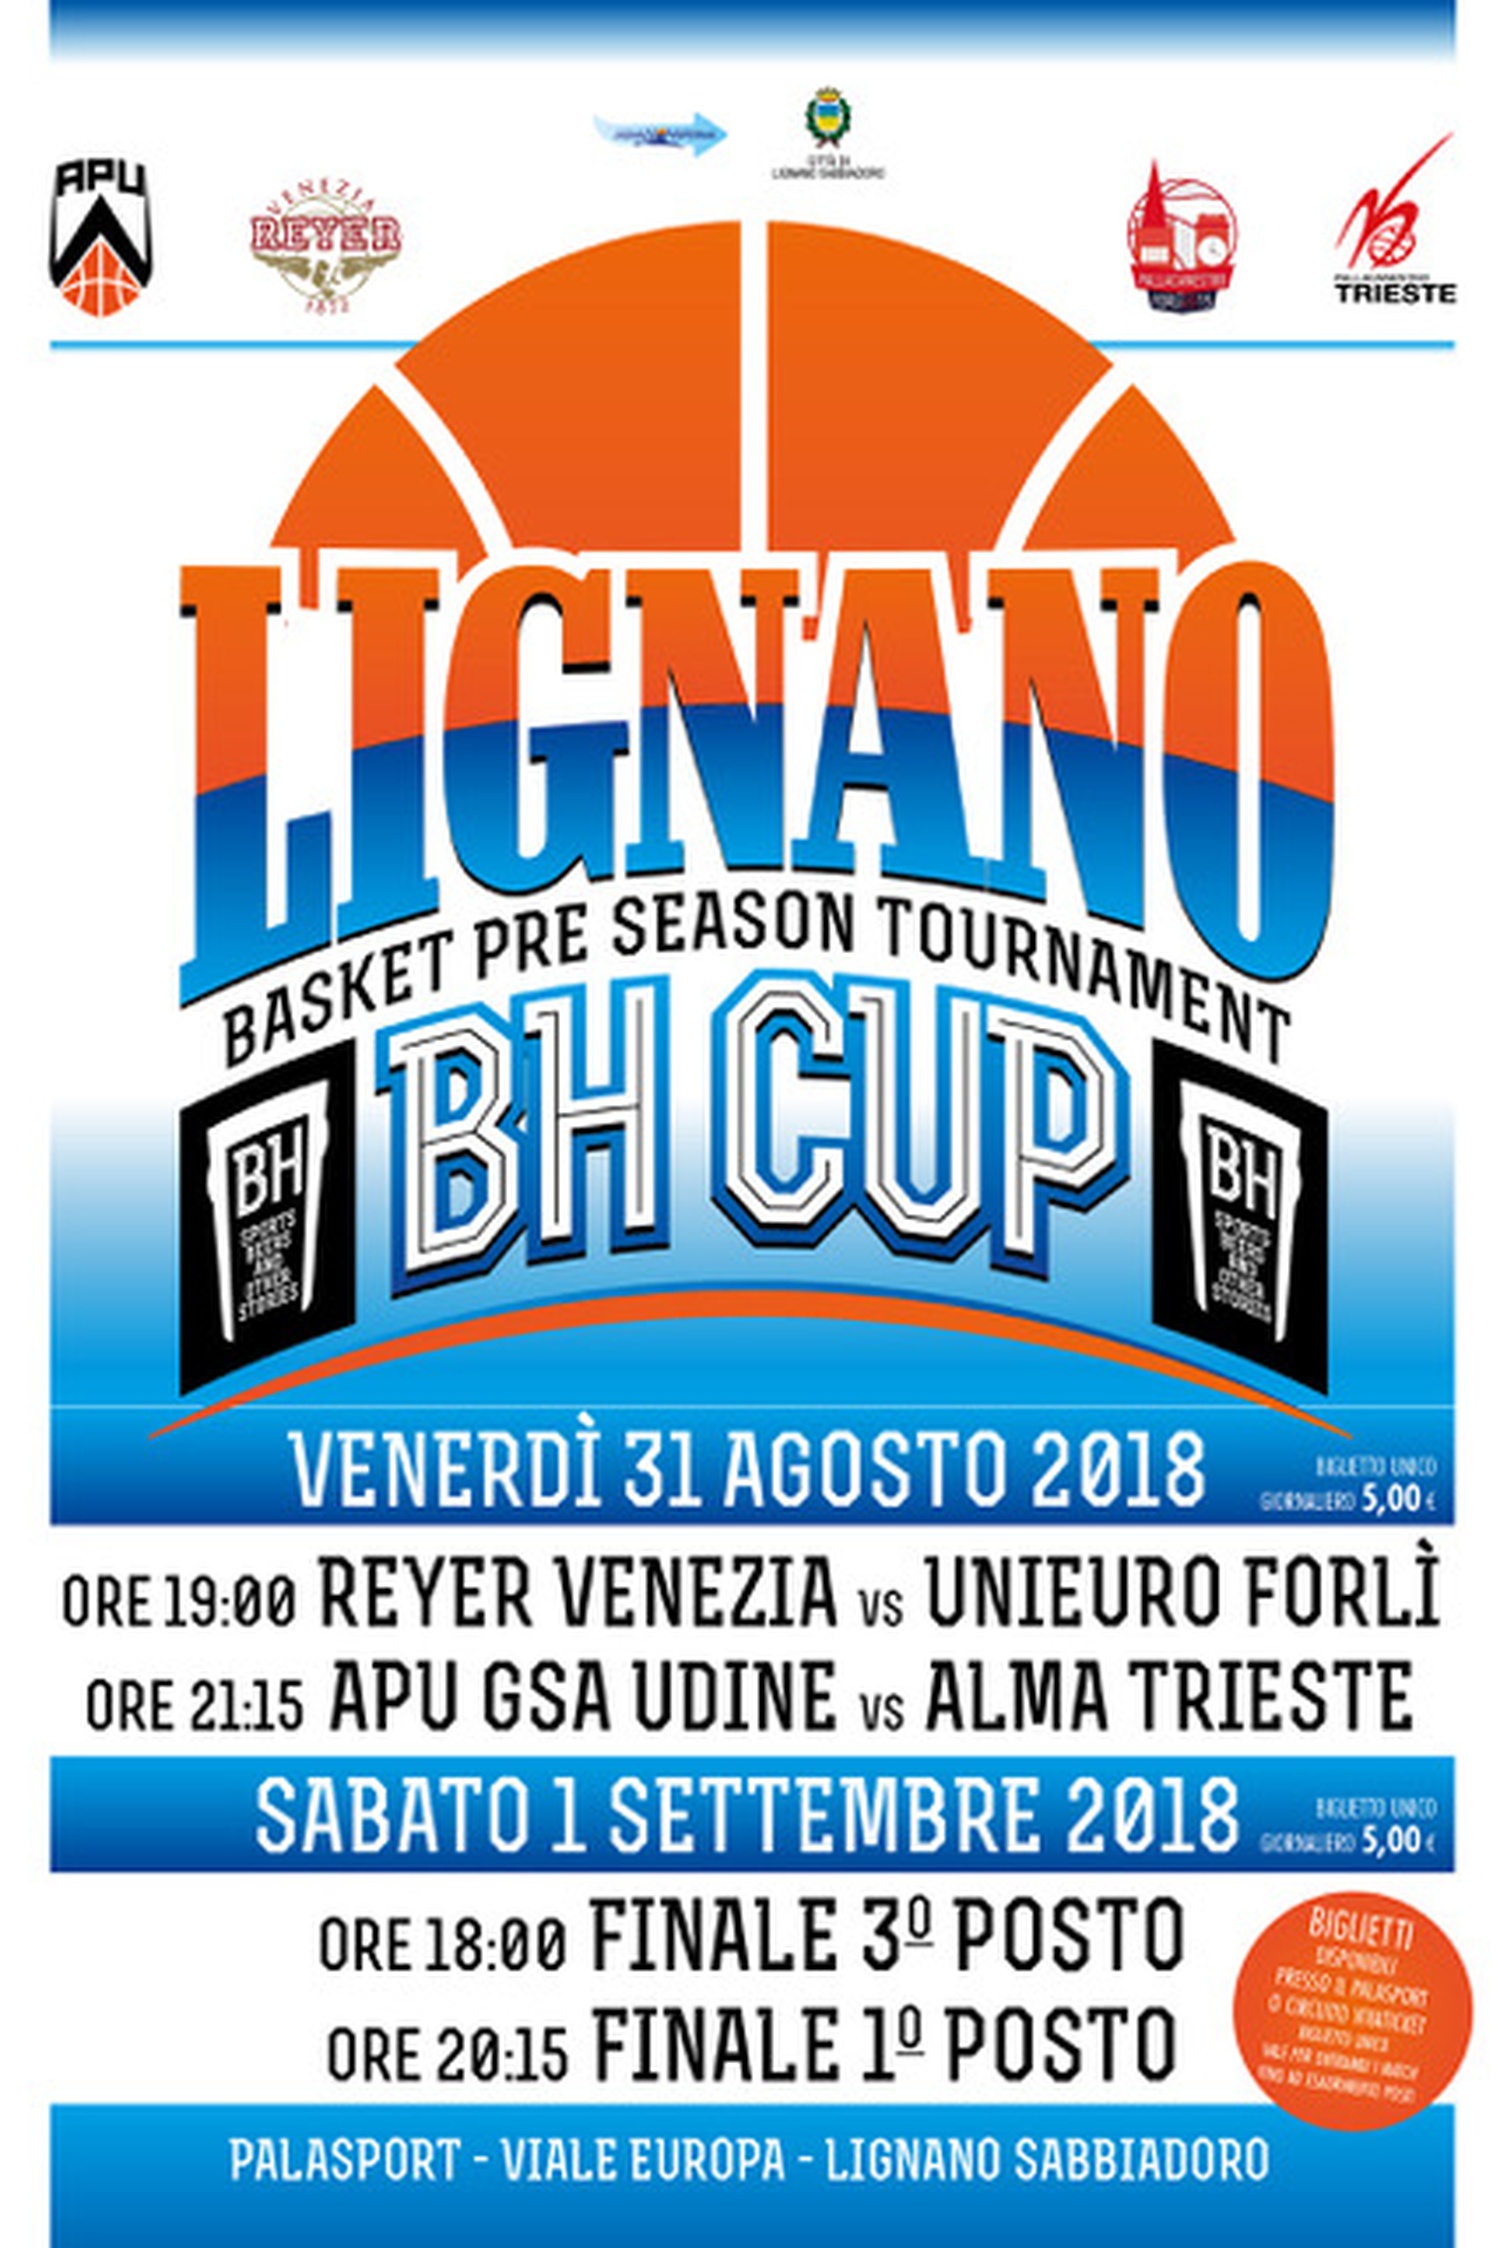 Foto di Lignano BH Cup - Basket pre-season tournament 